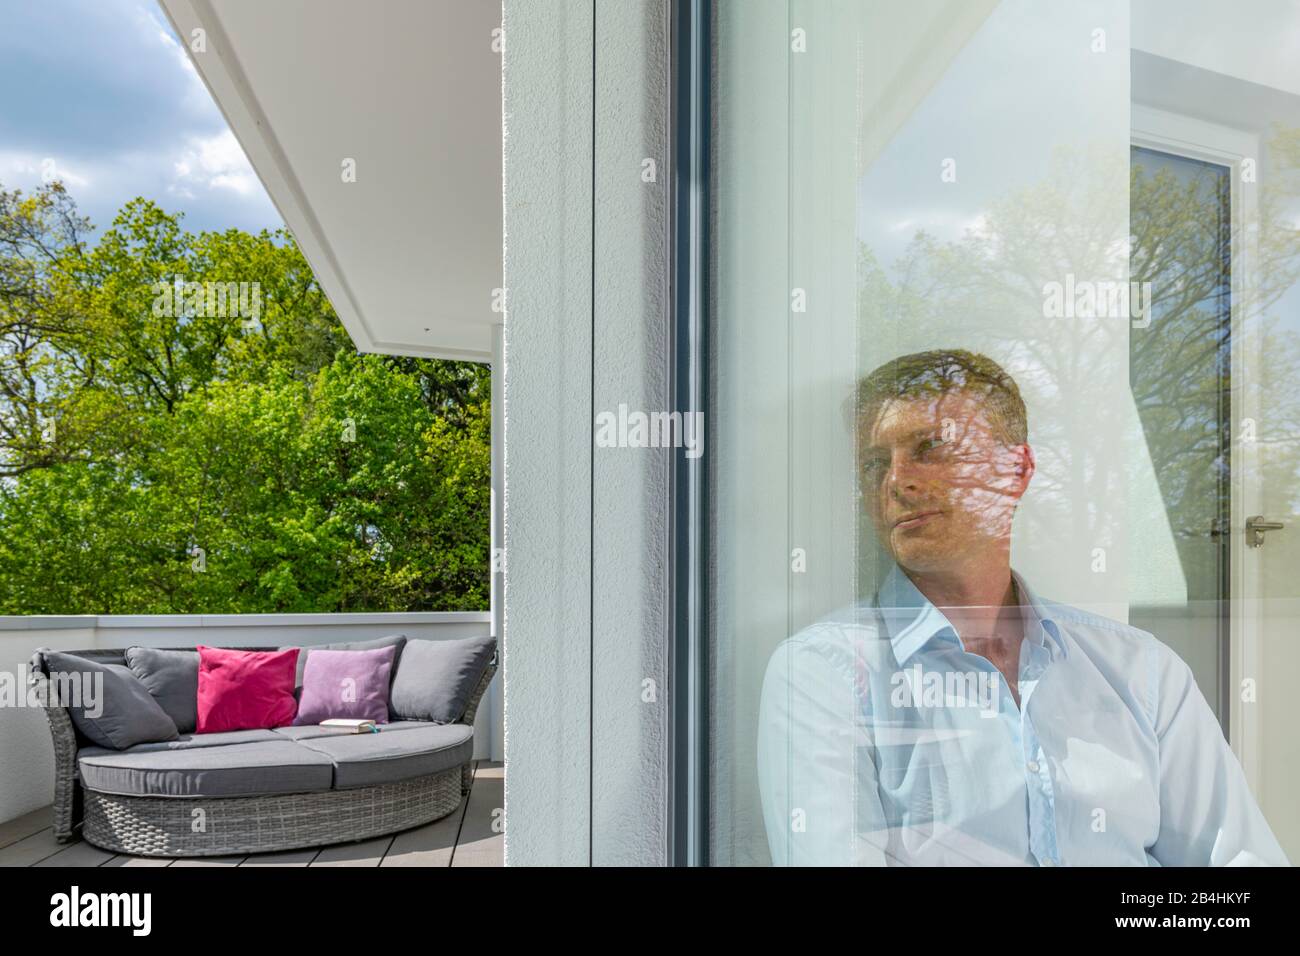 junger Mann blickt durch Glasscheibe in den Außenraum, moderne Architektur Stock Photo